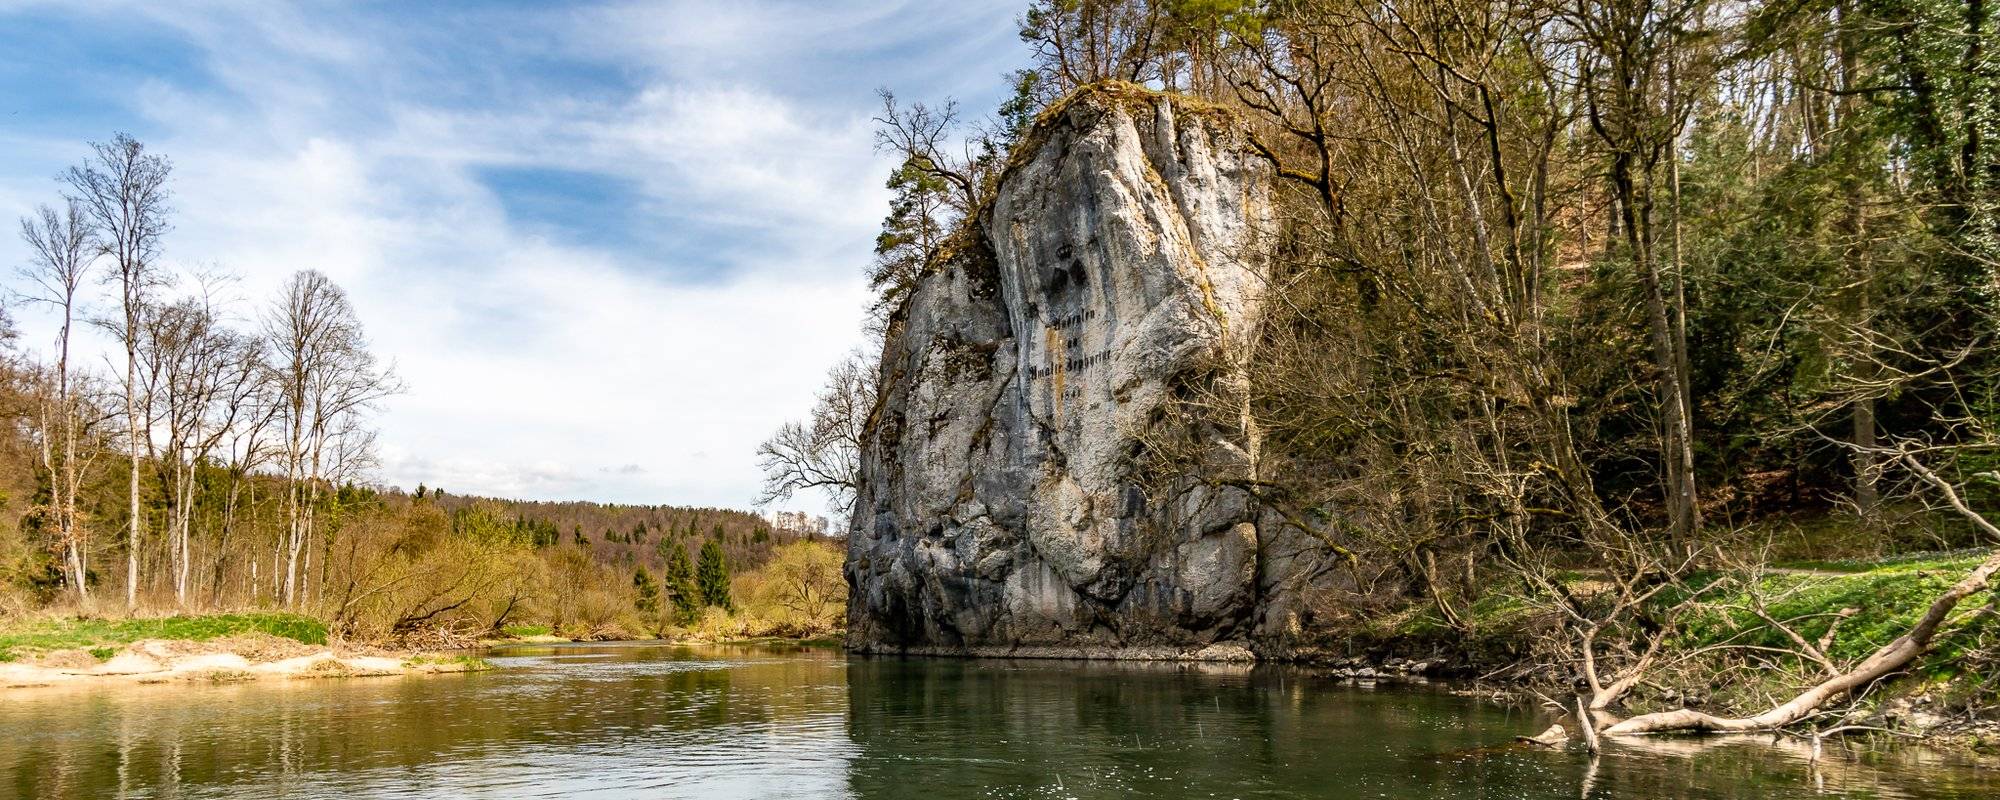 A legendary hiking trail across the Devil's Bridge in the Danube valley - Ein sagenumwobener Wanderweg über die Teufelsbrücke im Donautal [EN/DE]